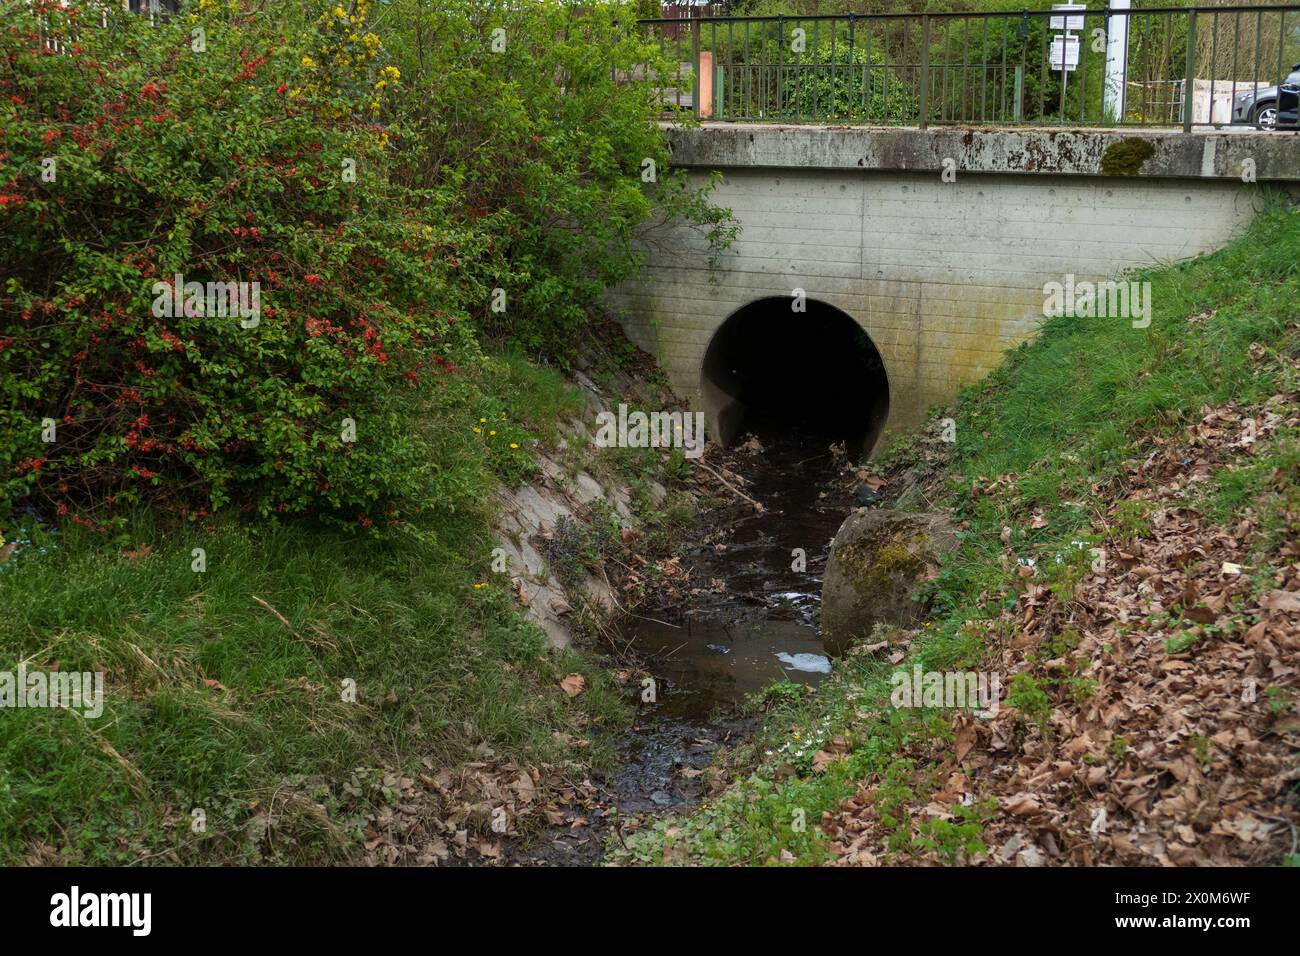 Abwasserkanal aus Beton führt Wasser in einen kleine Bach Foto Stock